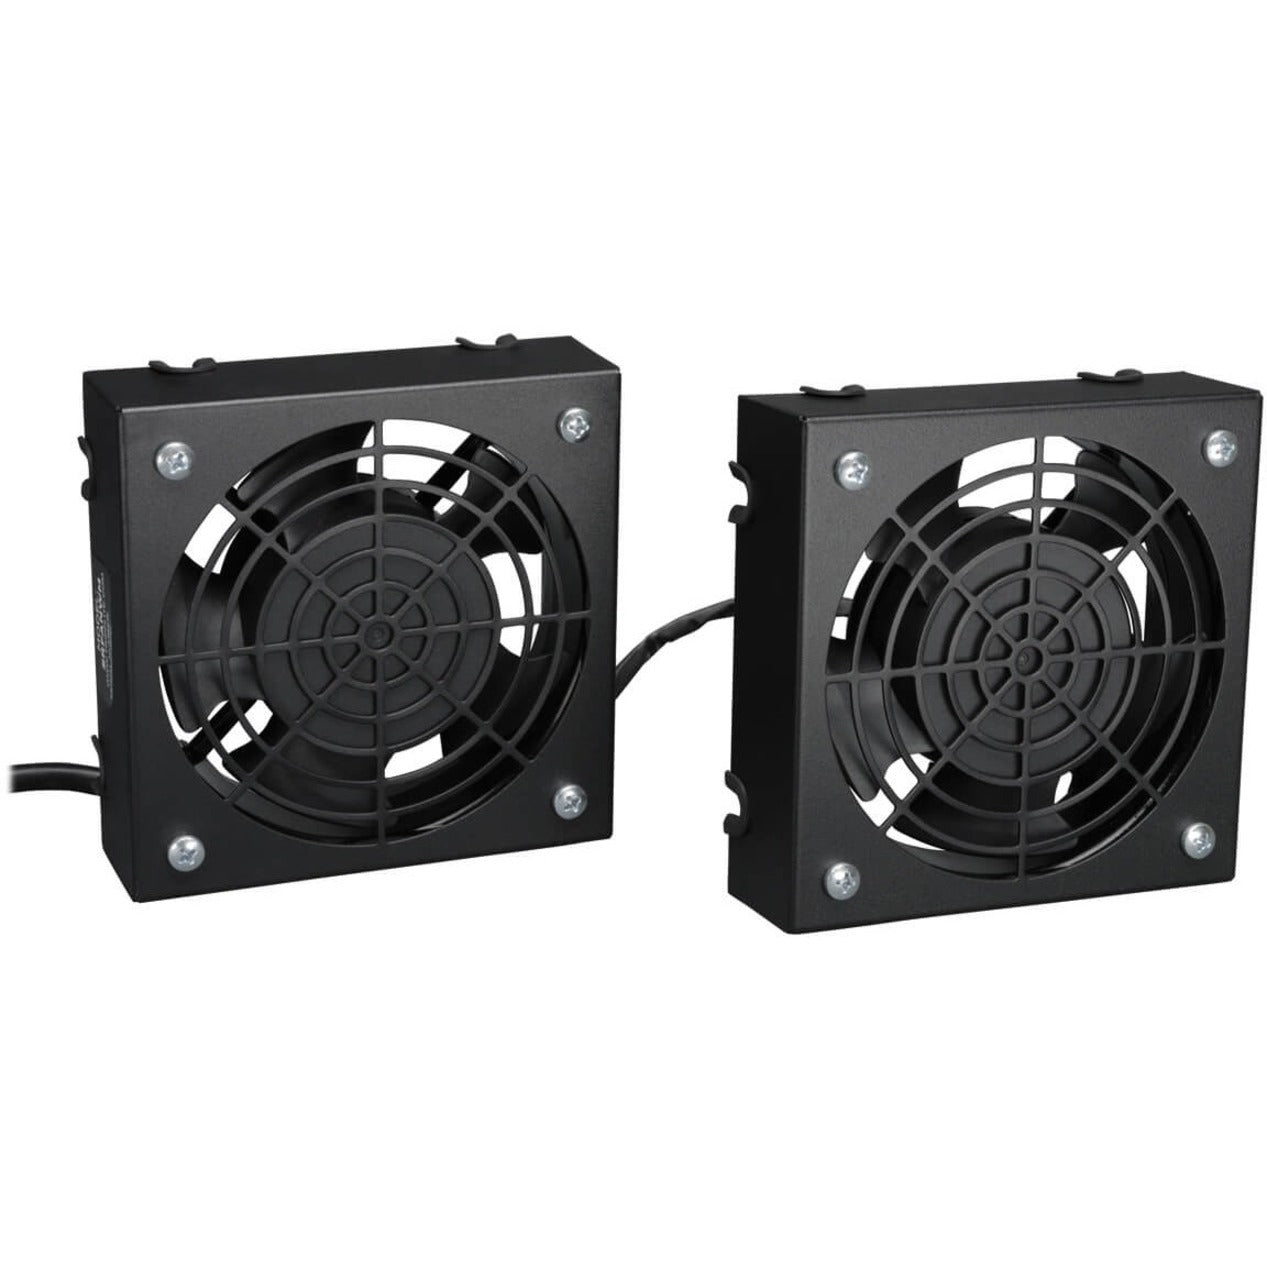 Tripp Lite SRFANWM Cooling Fan, 2 Year Limited Warranty, Cabinet, 1570.9 gal/min Maximum Airflow